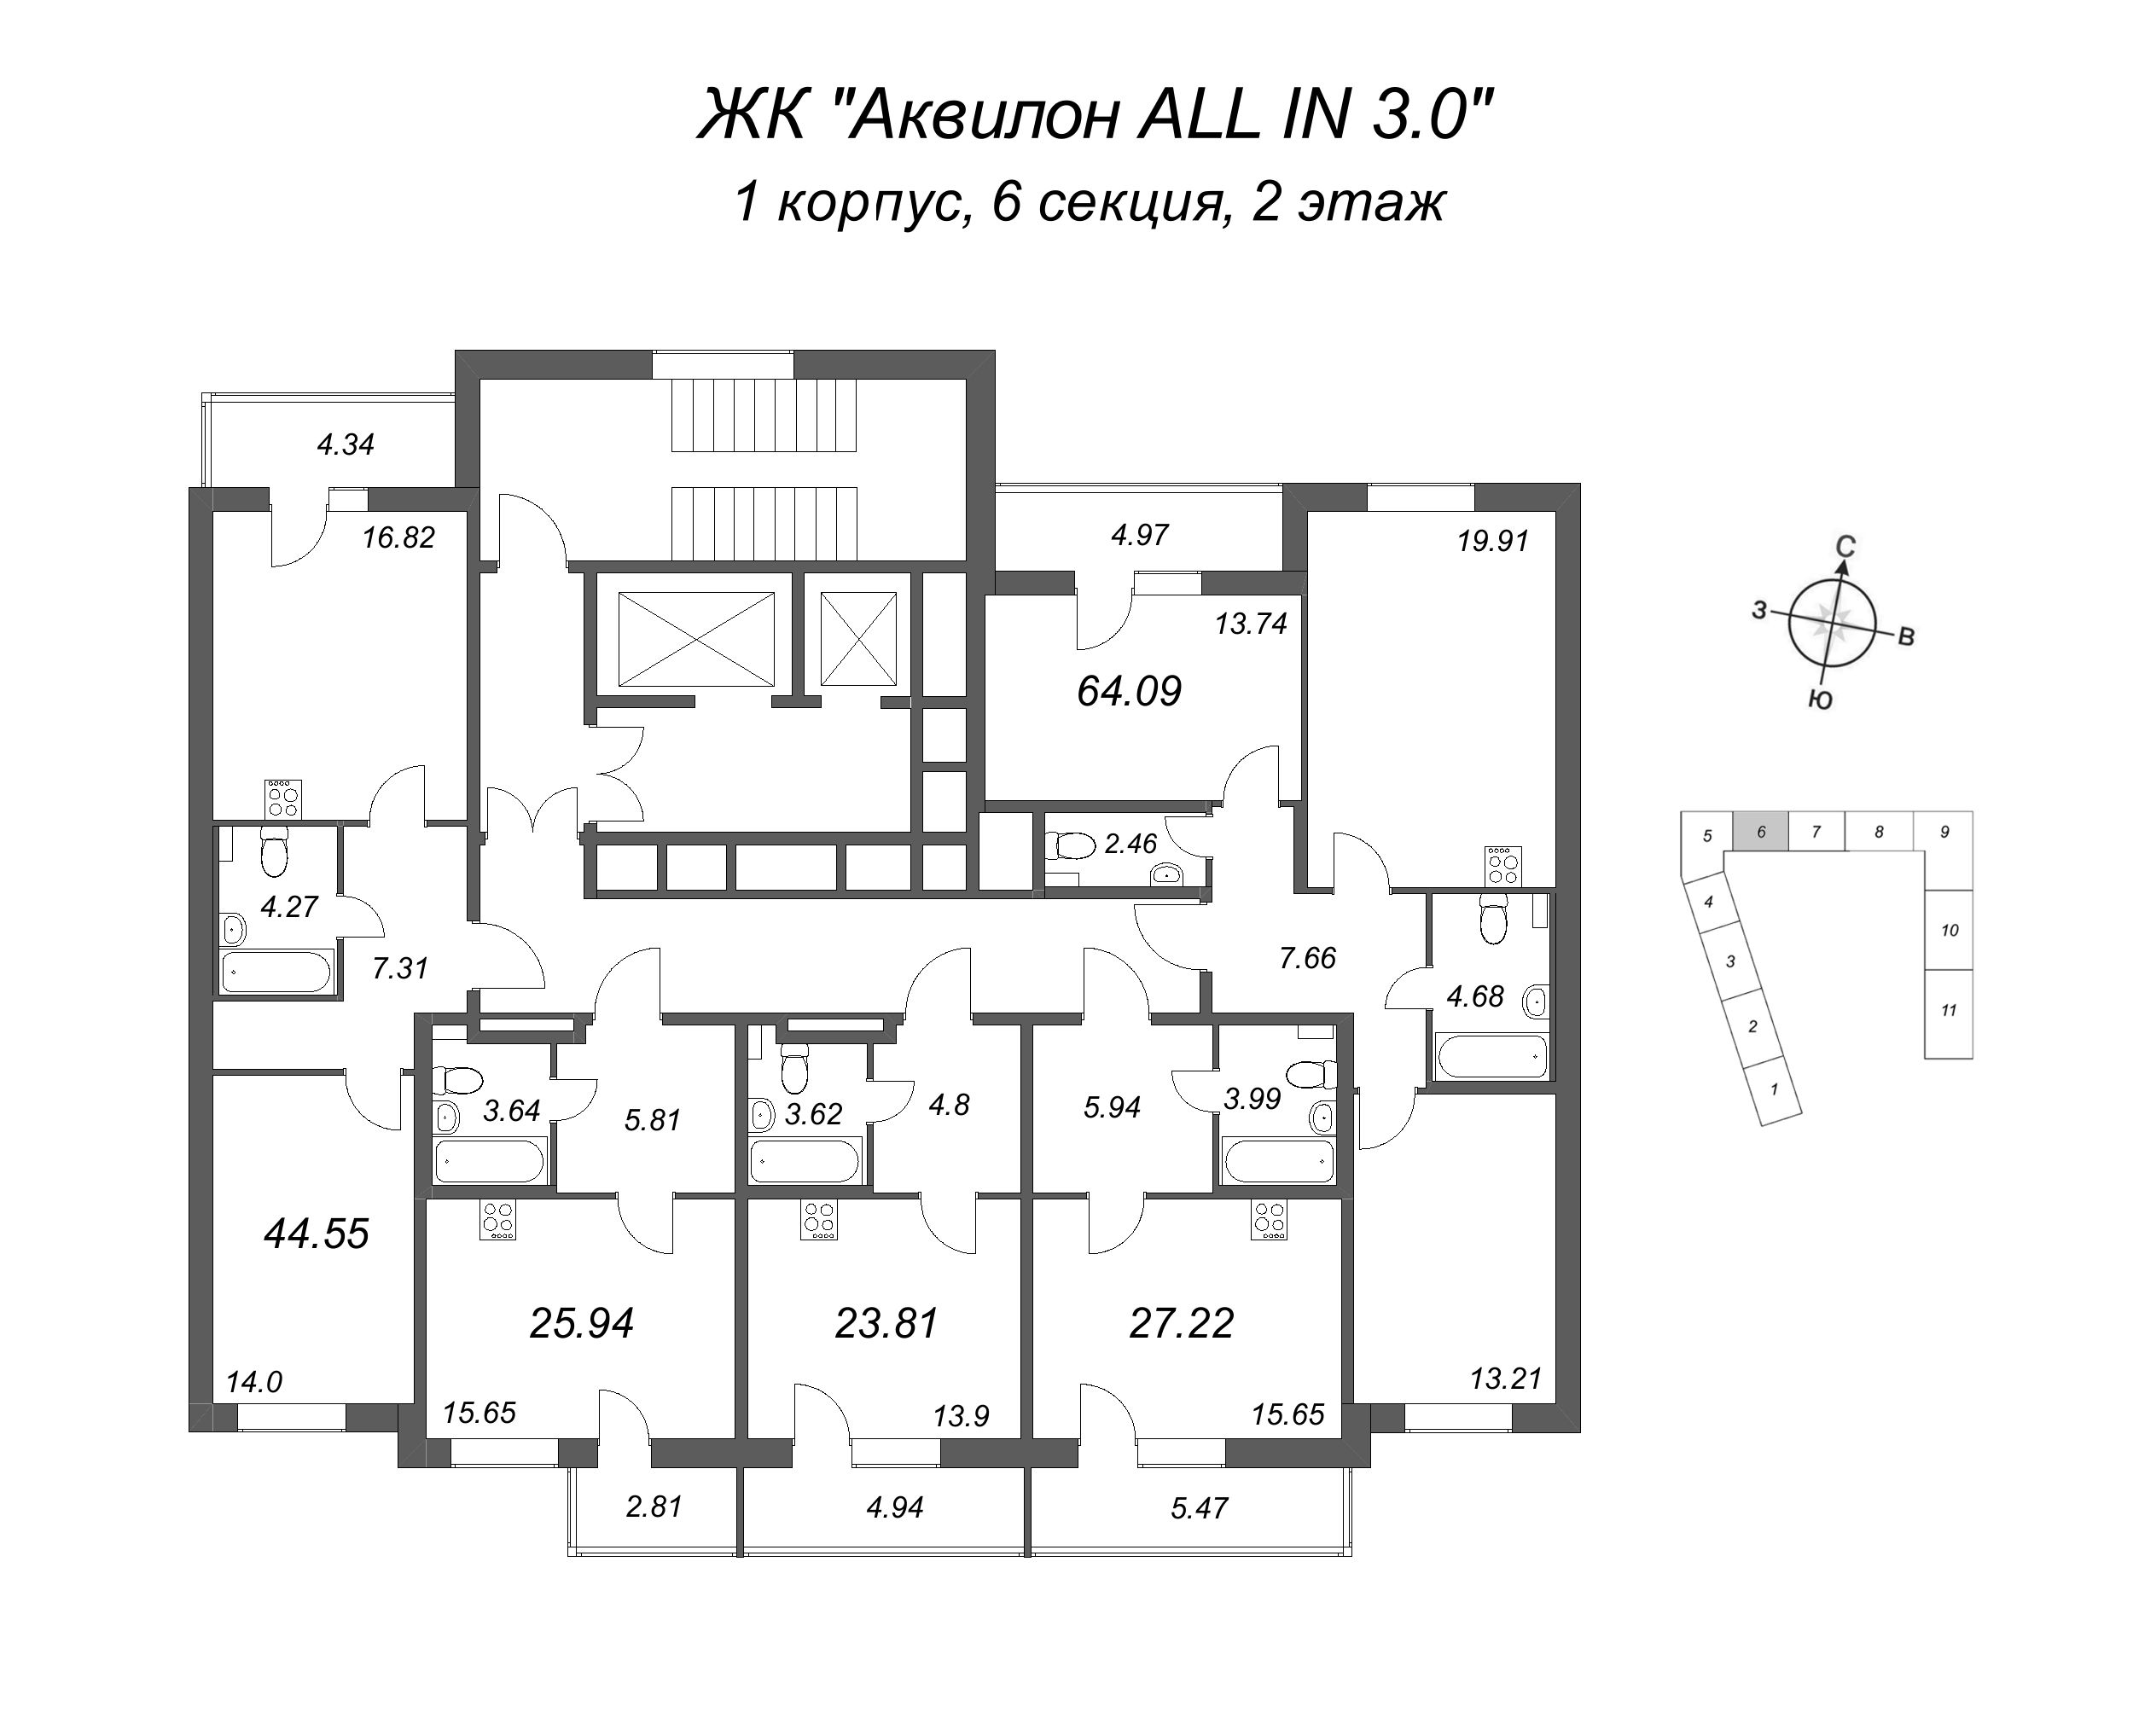 Квартира-студия, 23.81 м² в ЖК "Аквилон All in 3.0" - планировка этажа